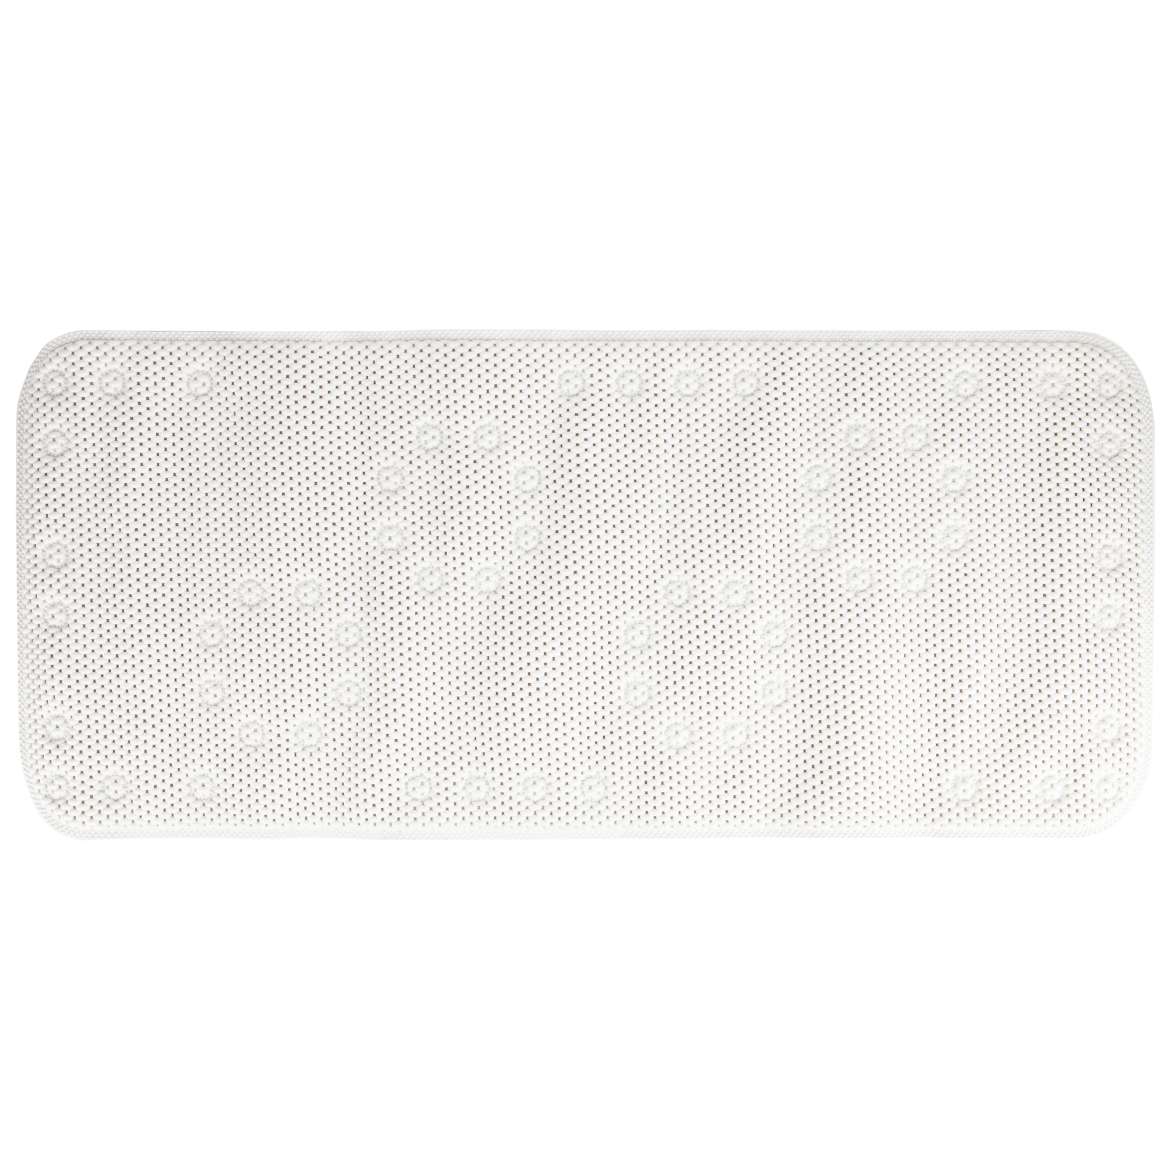 Duck® Extra-Soft Bath Mat